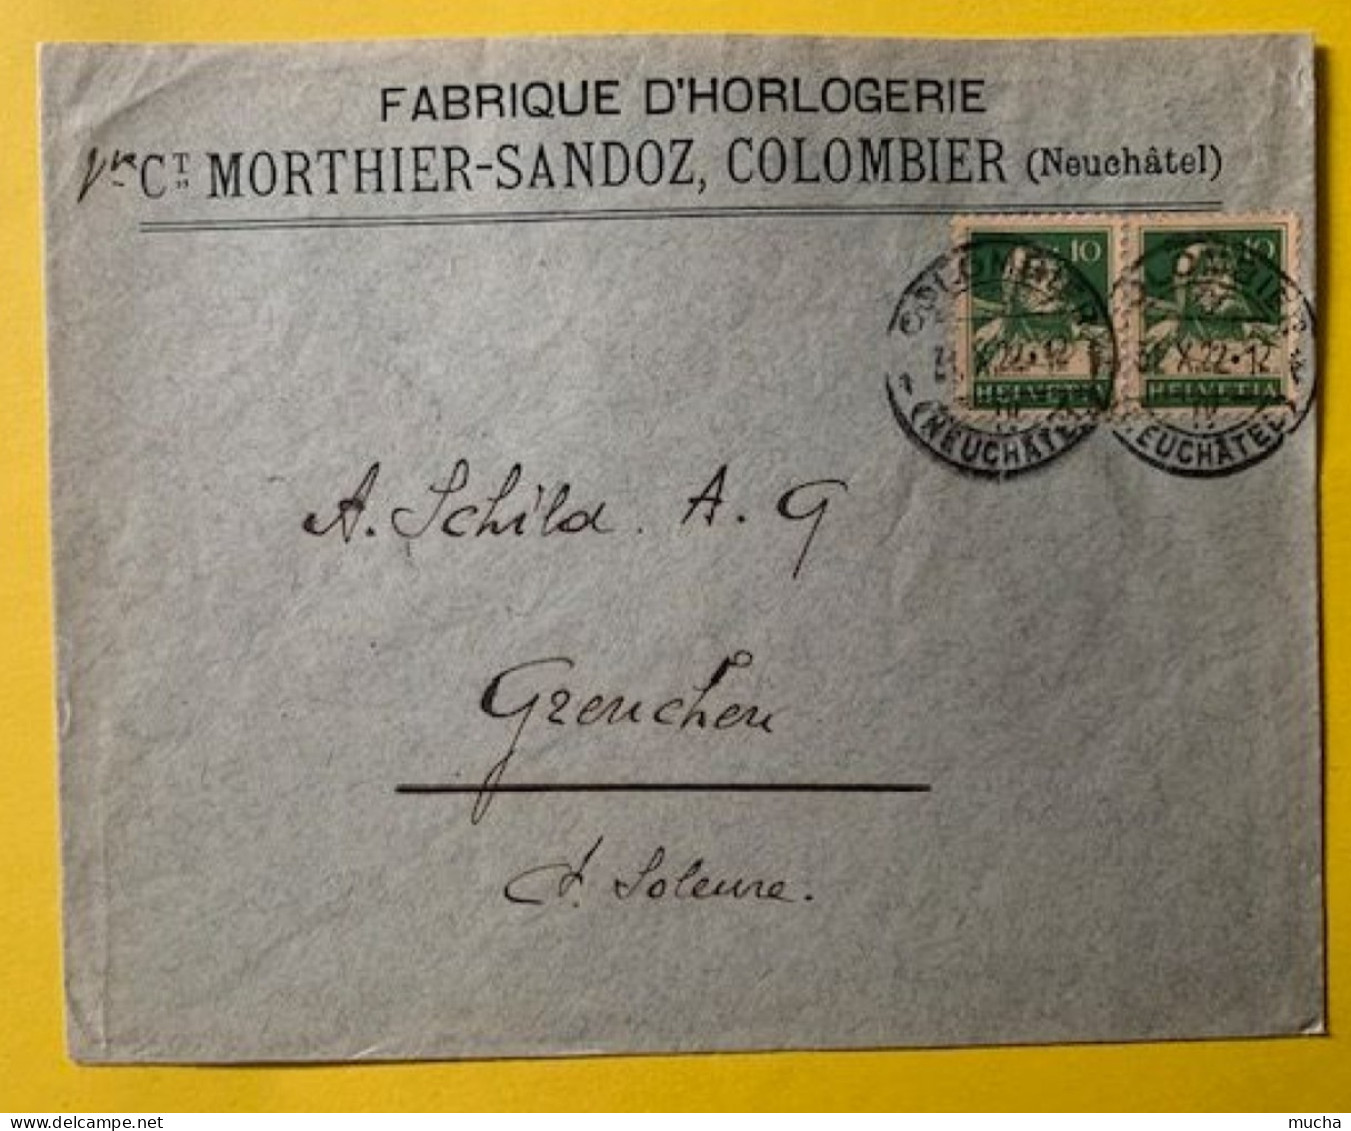 70030 - Suisse Lettre Fabrique D'Horlogerie Vve Morthier-Sandoz Colombier 31.10.1922 - Horloges